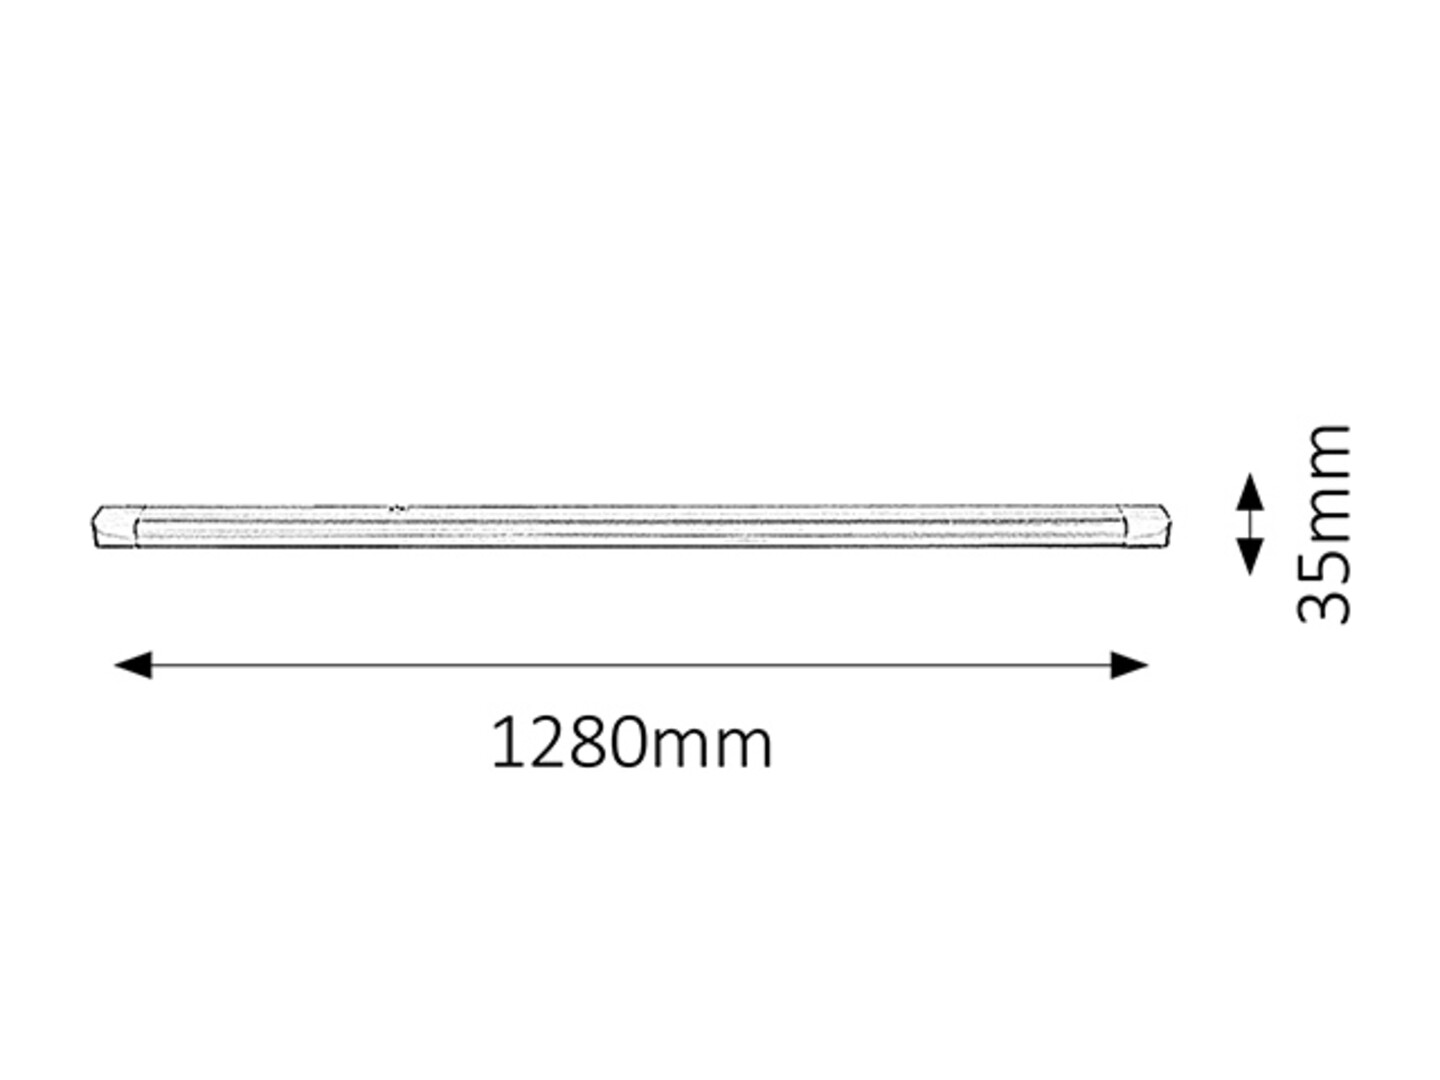 Arbeitsleuchte Band light 2305, G13, 36W, 2700K, 3350lm, Metall, weiß, warmweiß, 128cm